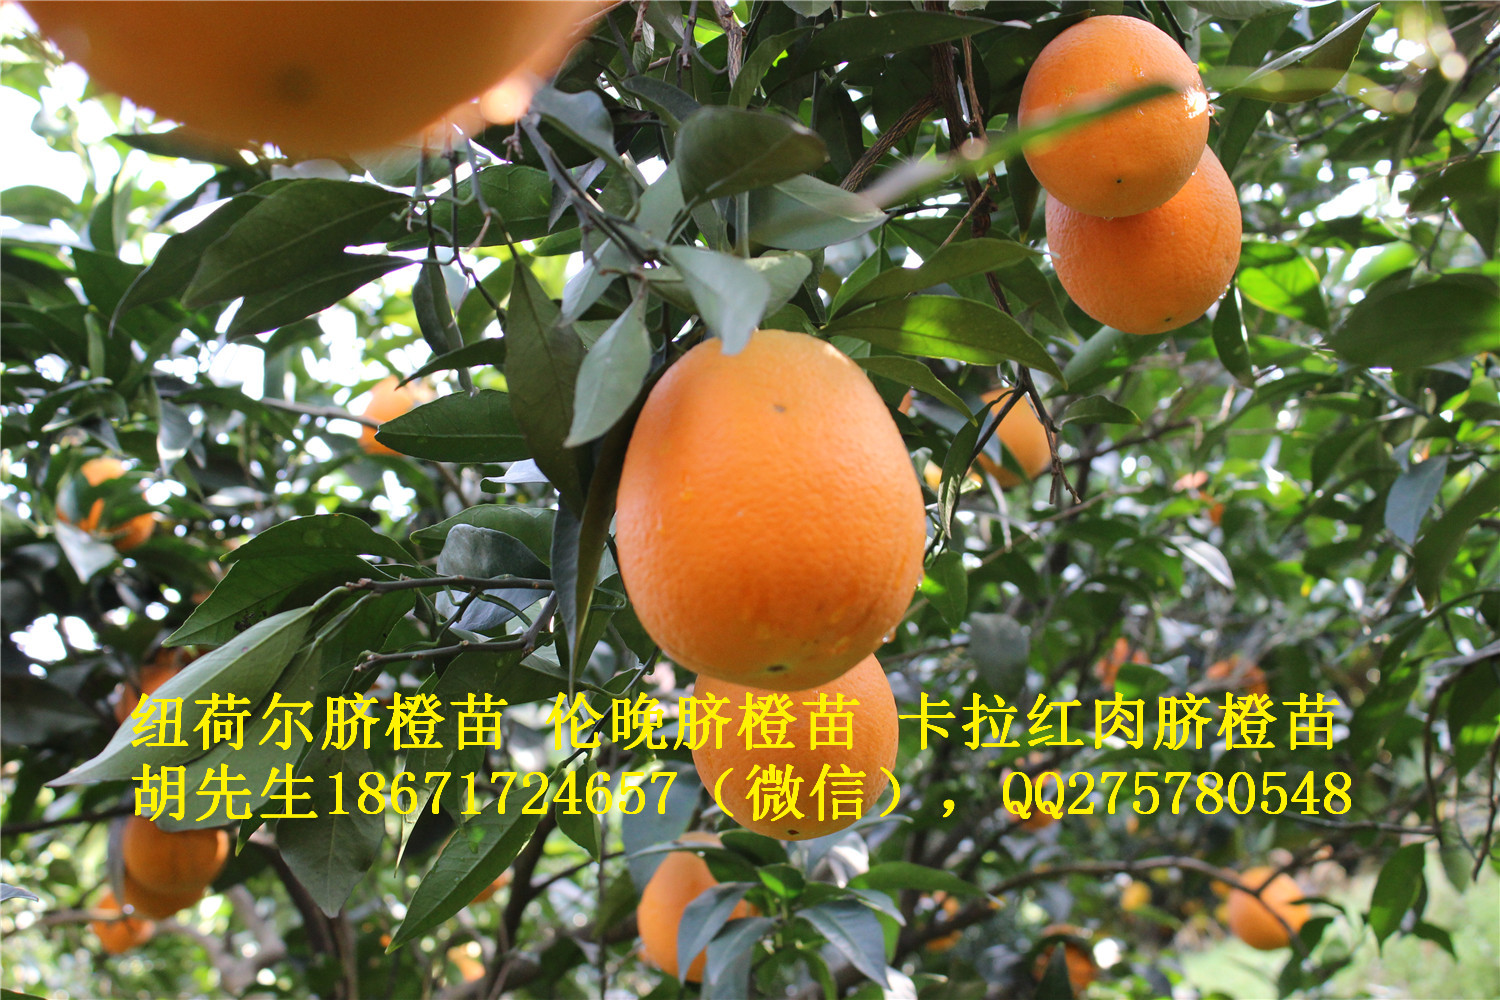 宜昌市纽荷尔脐橙苗大量出售2016年厂家供应用于的纽荷尔脐橙苗大量出售2016年